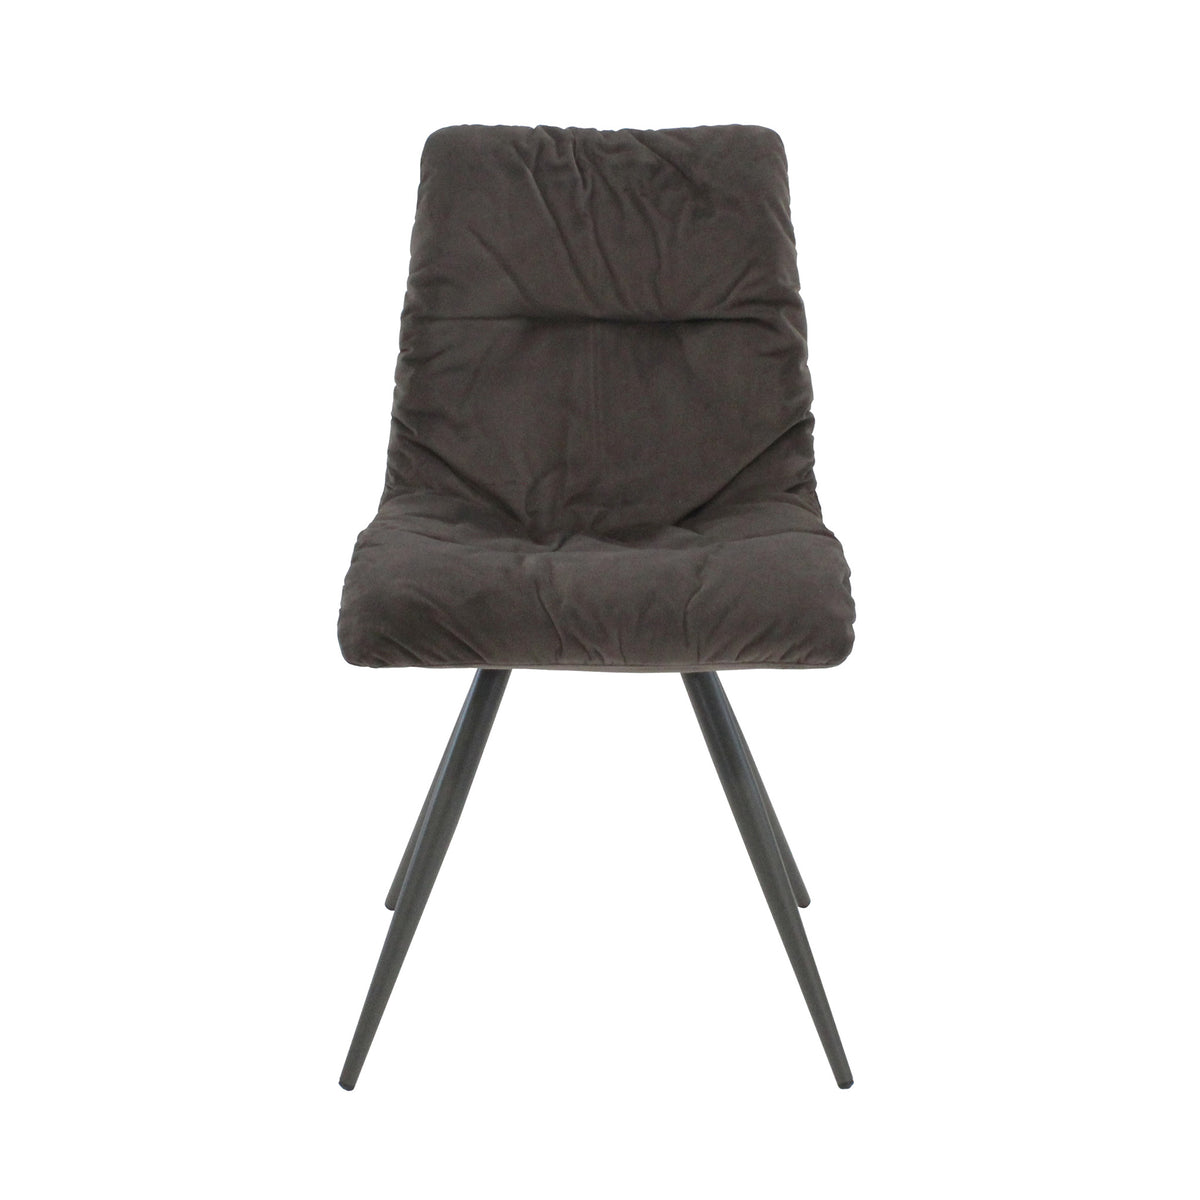 Brown Addison Velvet Chair from Roseland Furniture